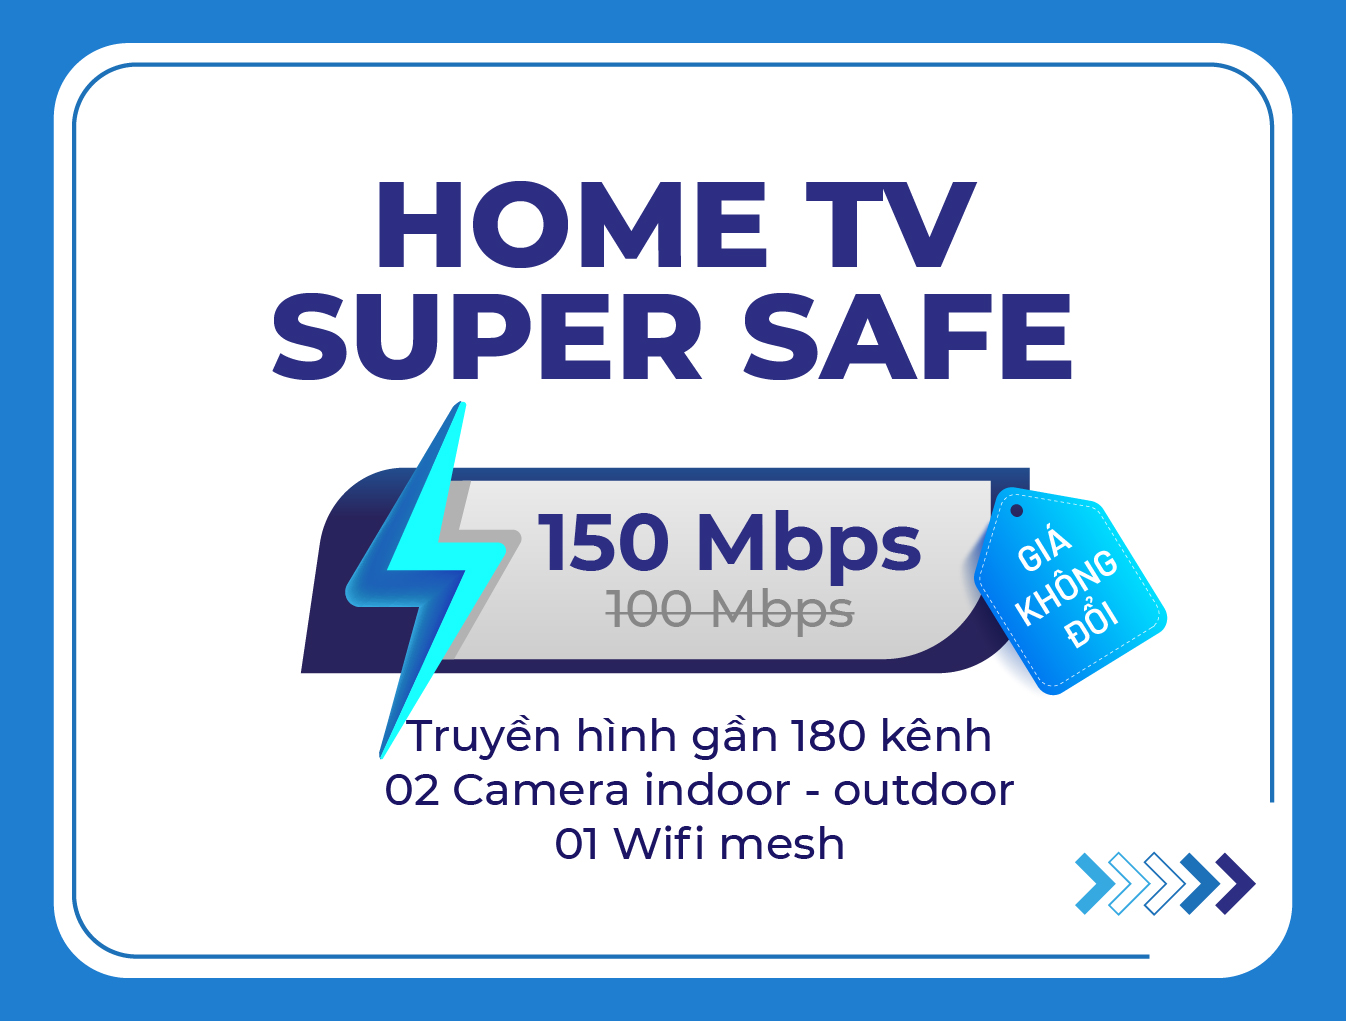 Home TV Super Safe